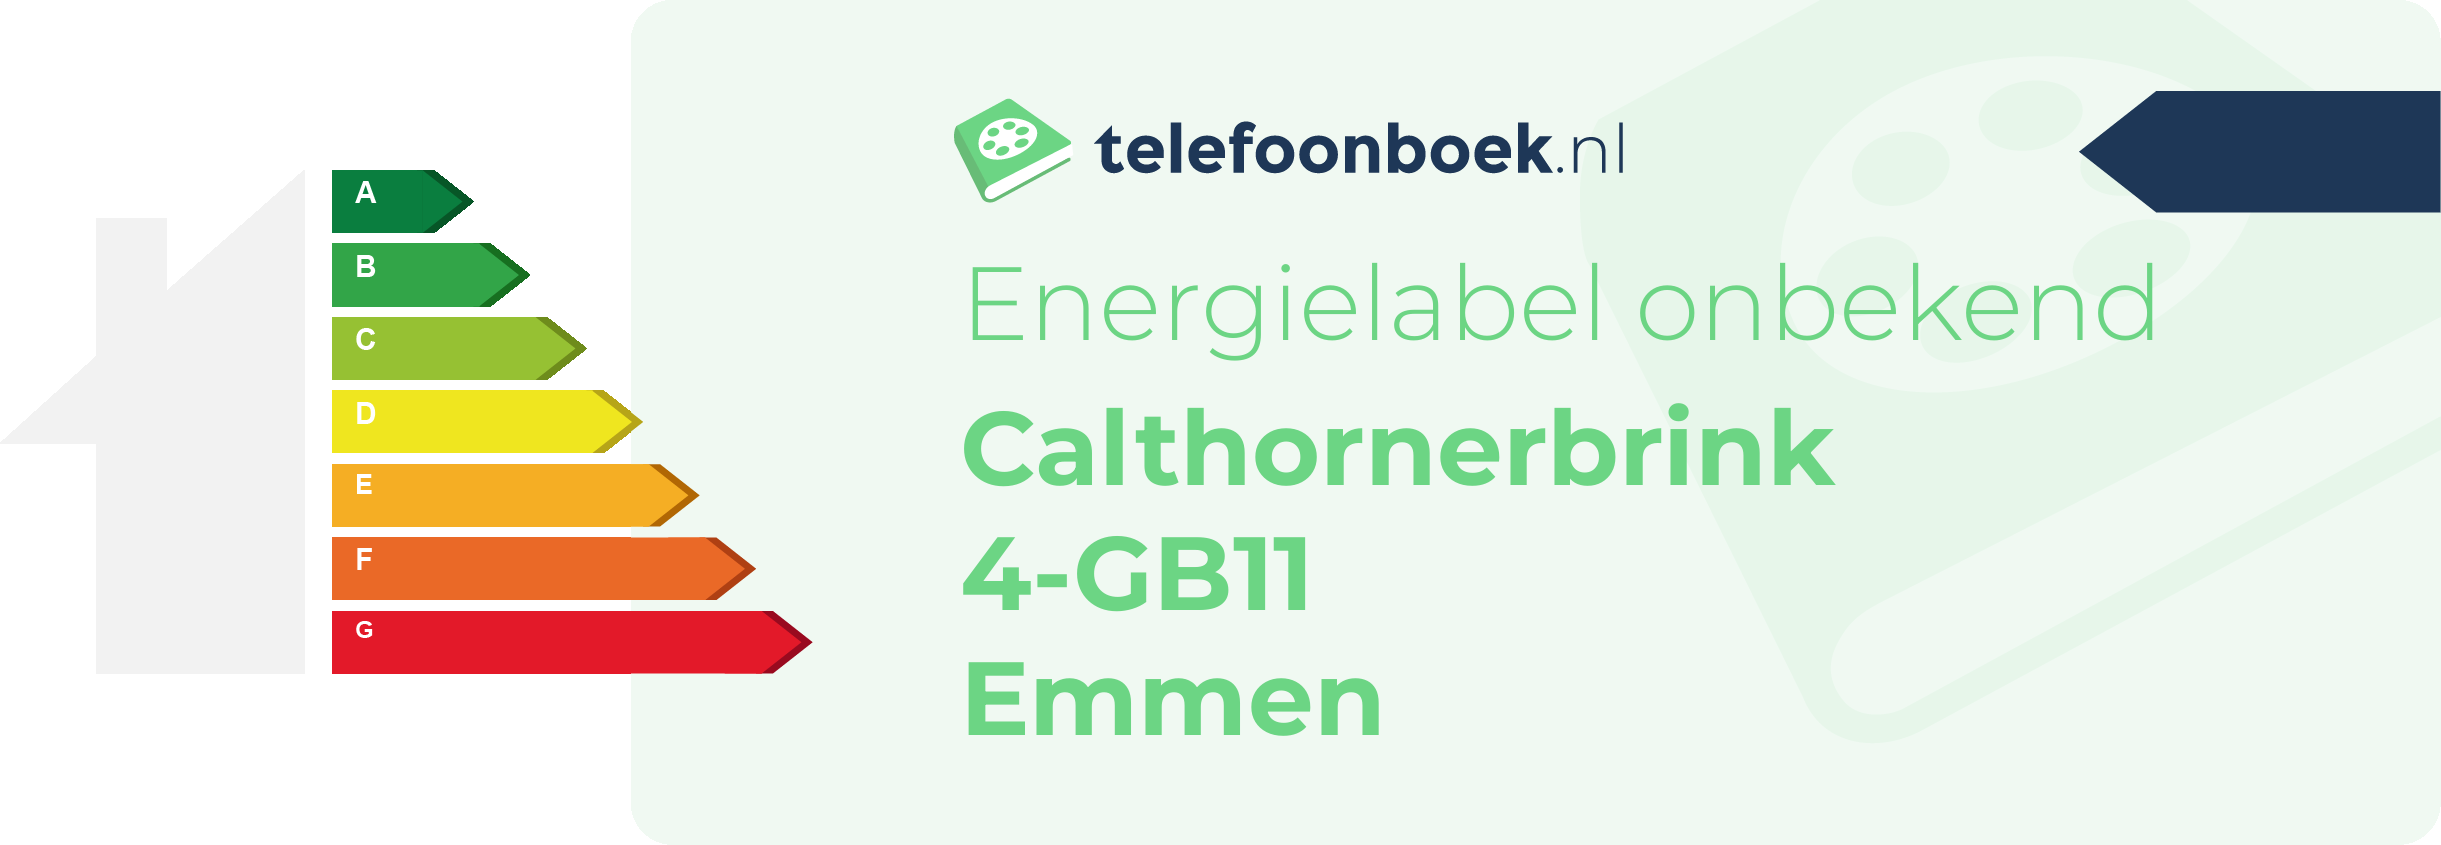 Energielabel Calthornerbrink 4-GB11 Emmen